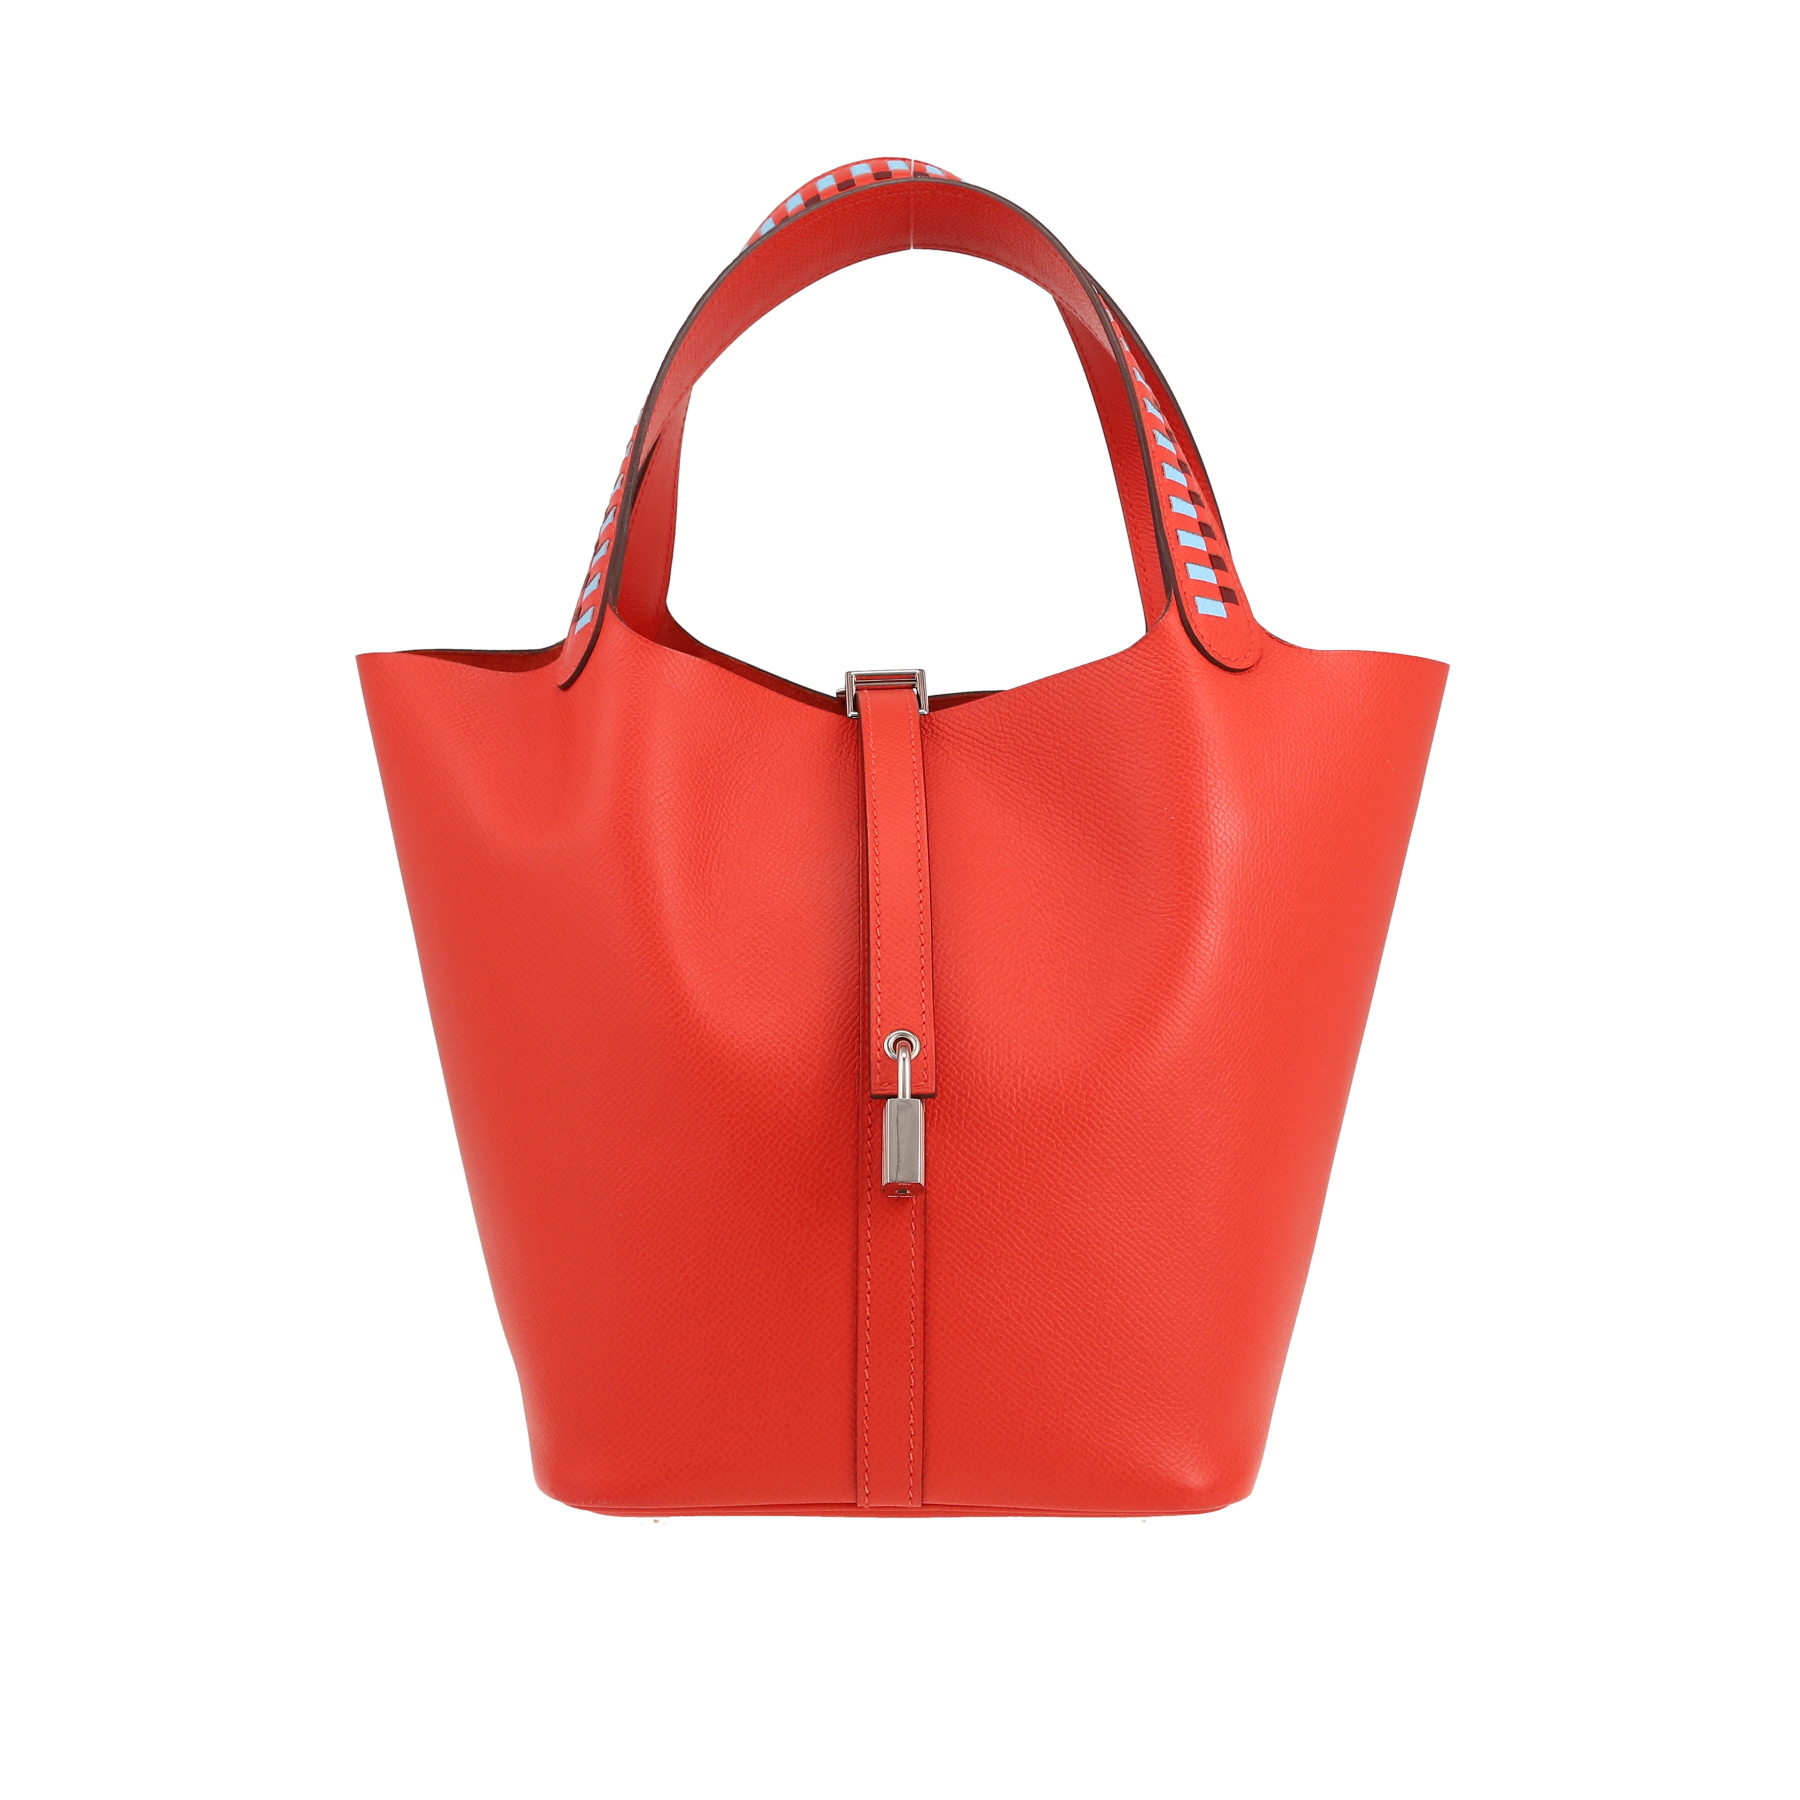 Picotin Lock Handbag In Epsom Leather